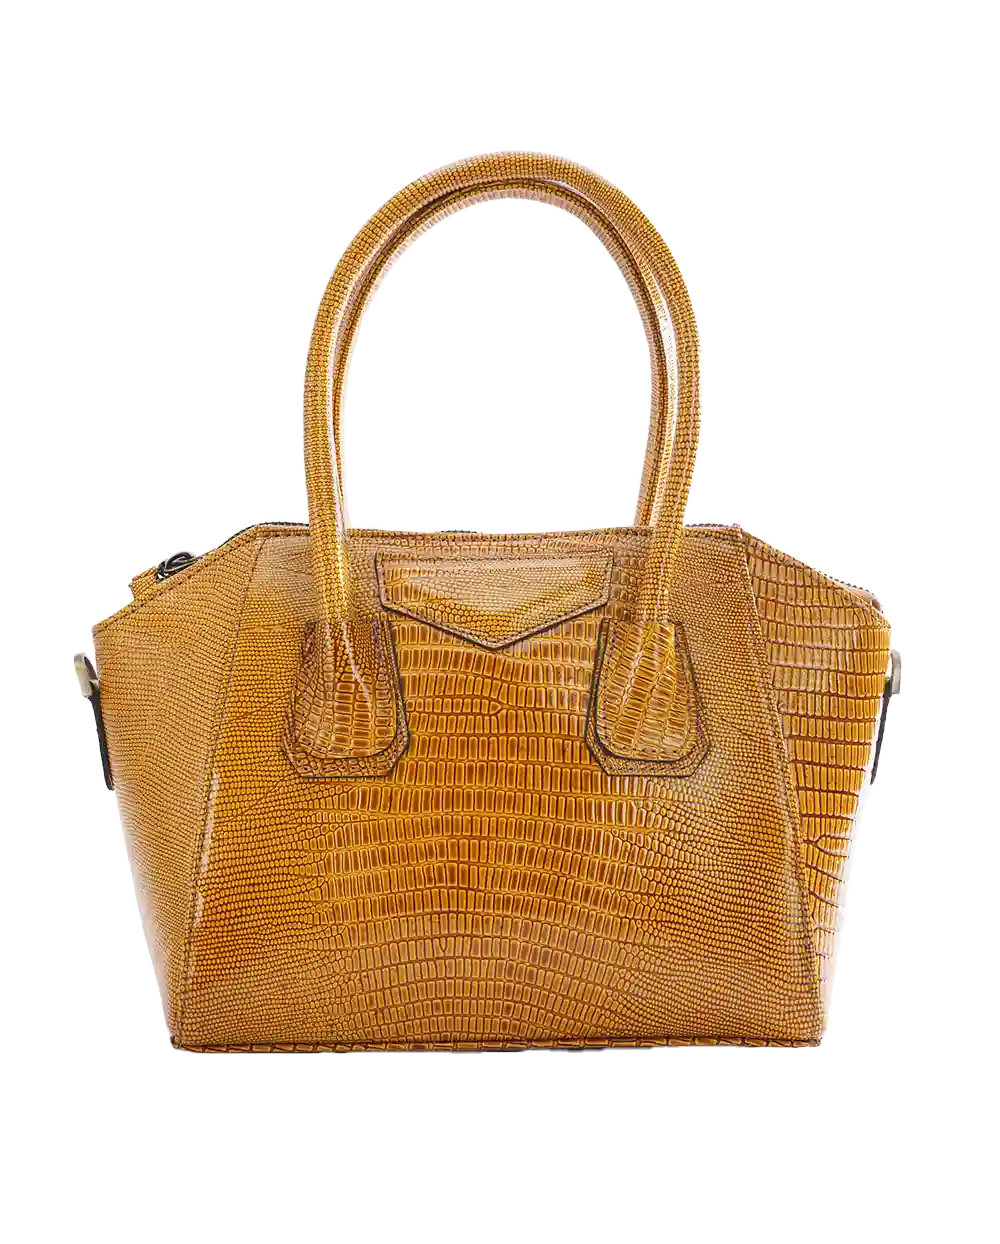 خرید کیف دوشی زنانه چرم طبیعی طرح دِلین مدل 1584 رنگ عسلی با بهترین قیمت همراه با 6 ماه گارانتی معتبر و ارسال رایگان | کیف رودوشی و دستی زنانه